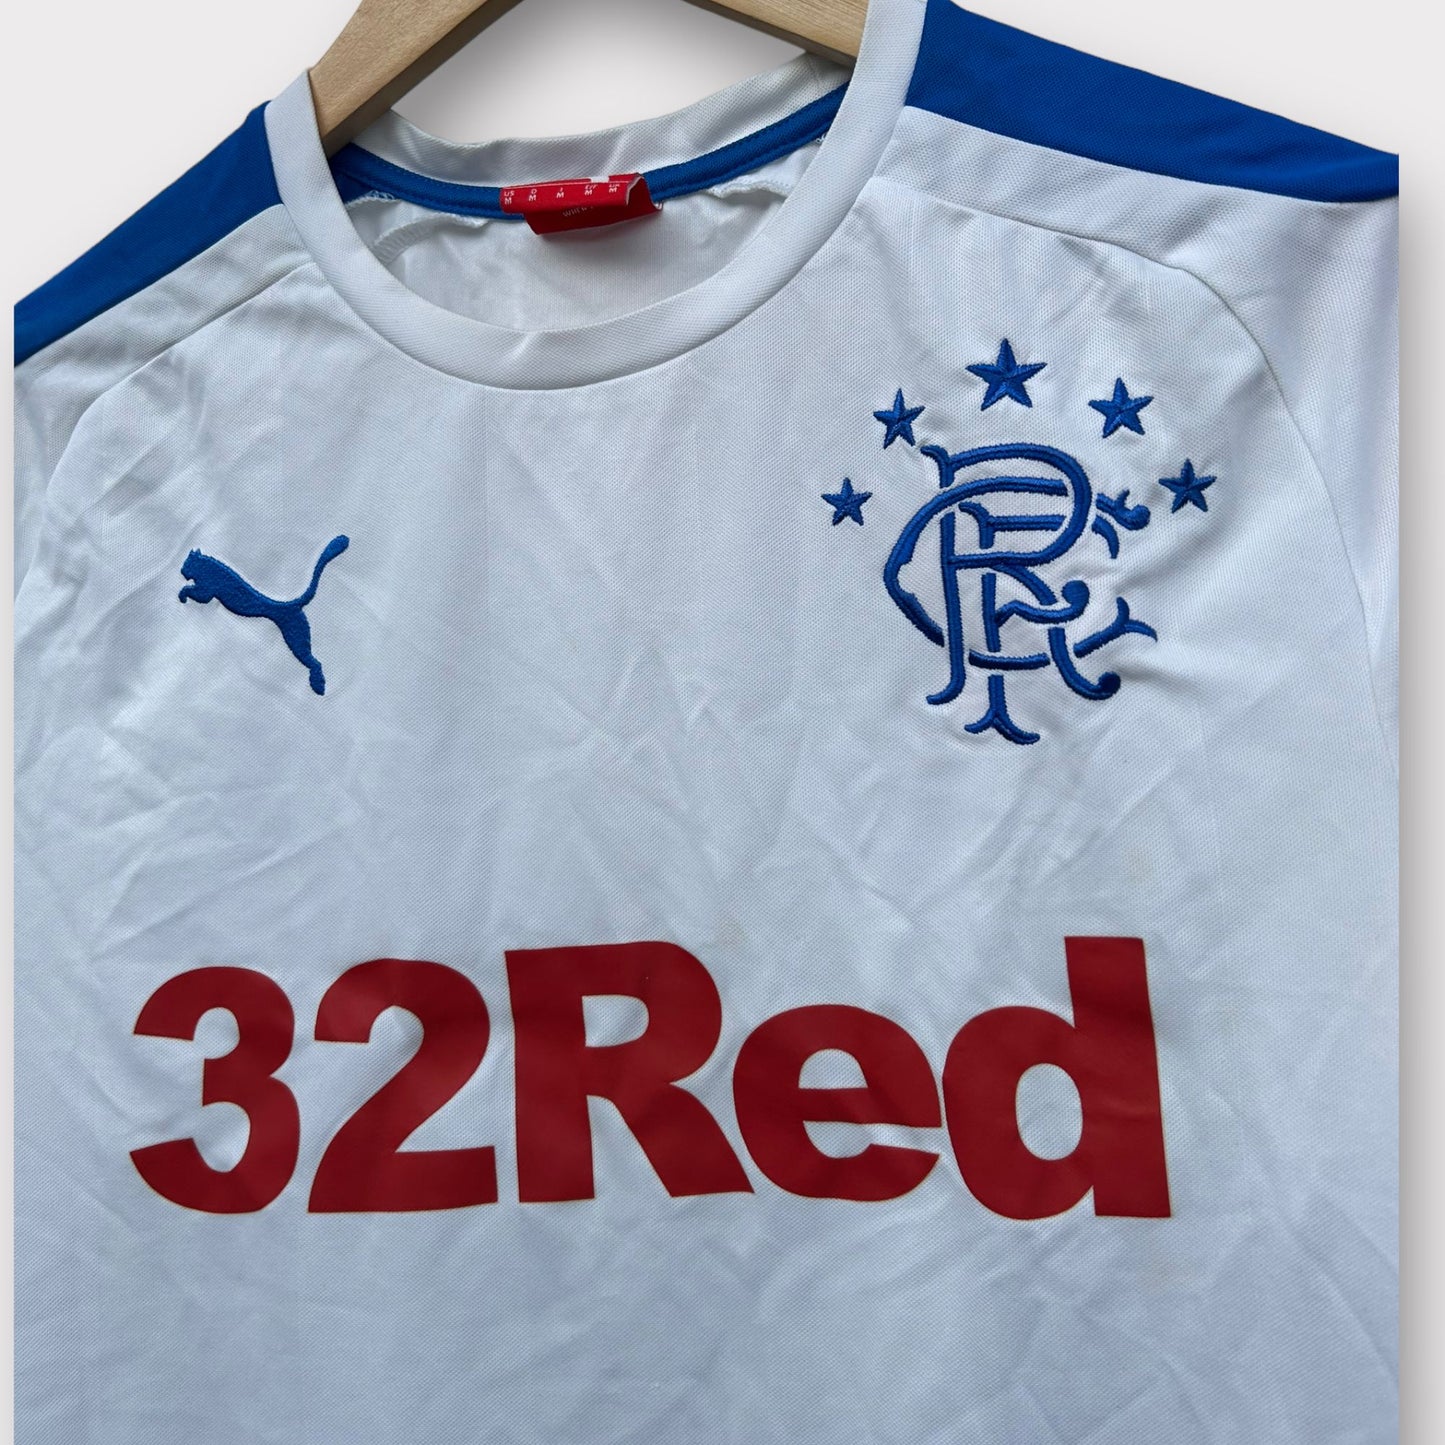 Rangers FC 2014/15 Away Shirt (M)